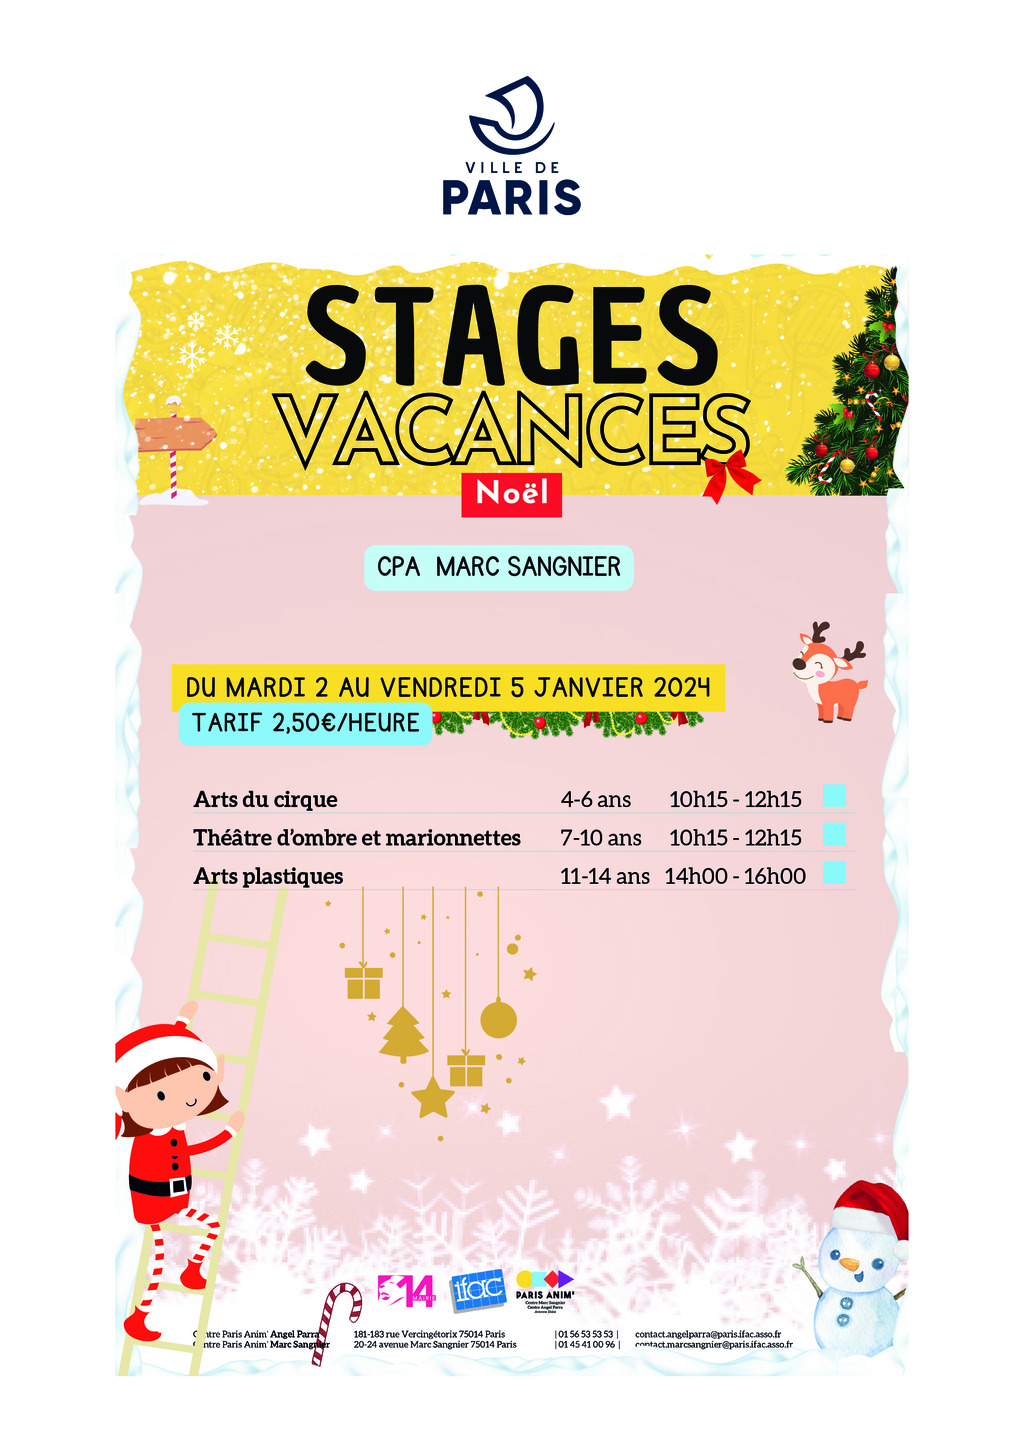 Stages vacances "NOËL"